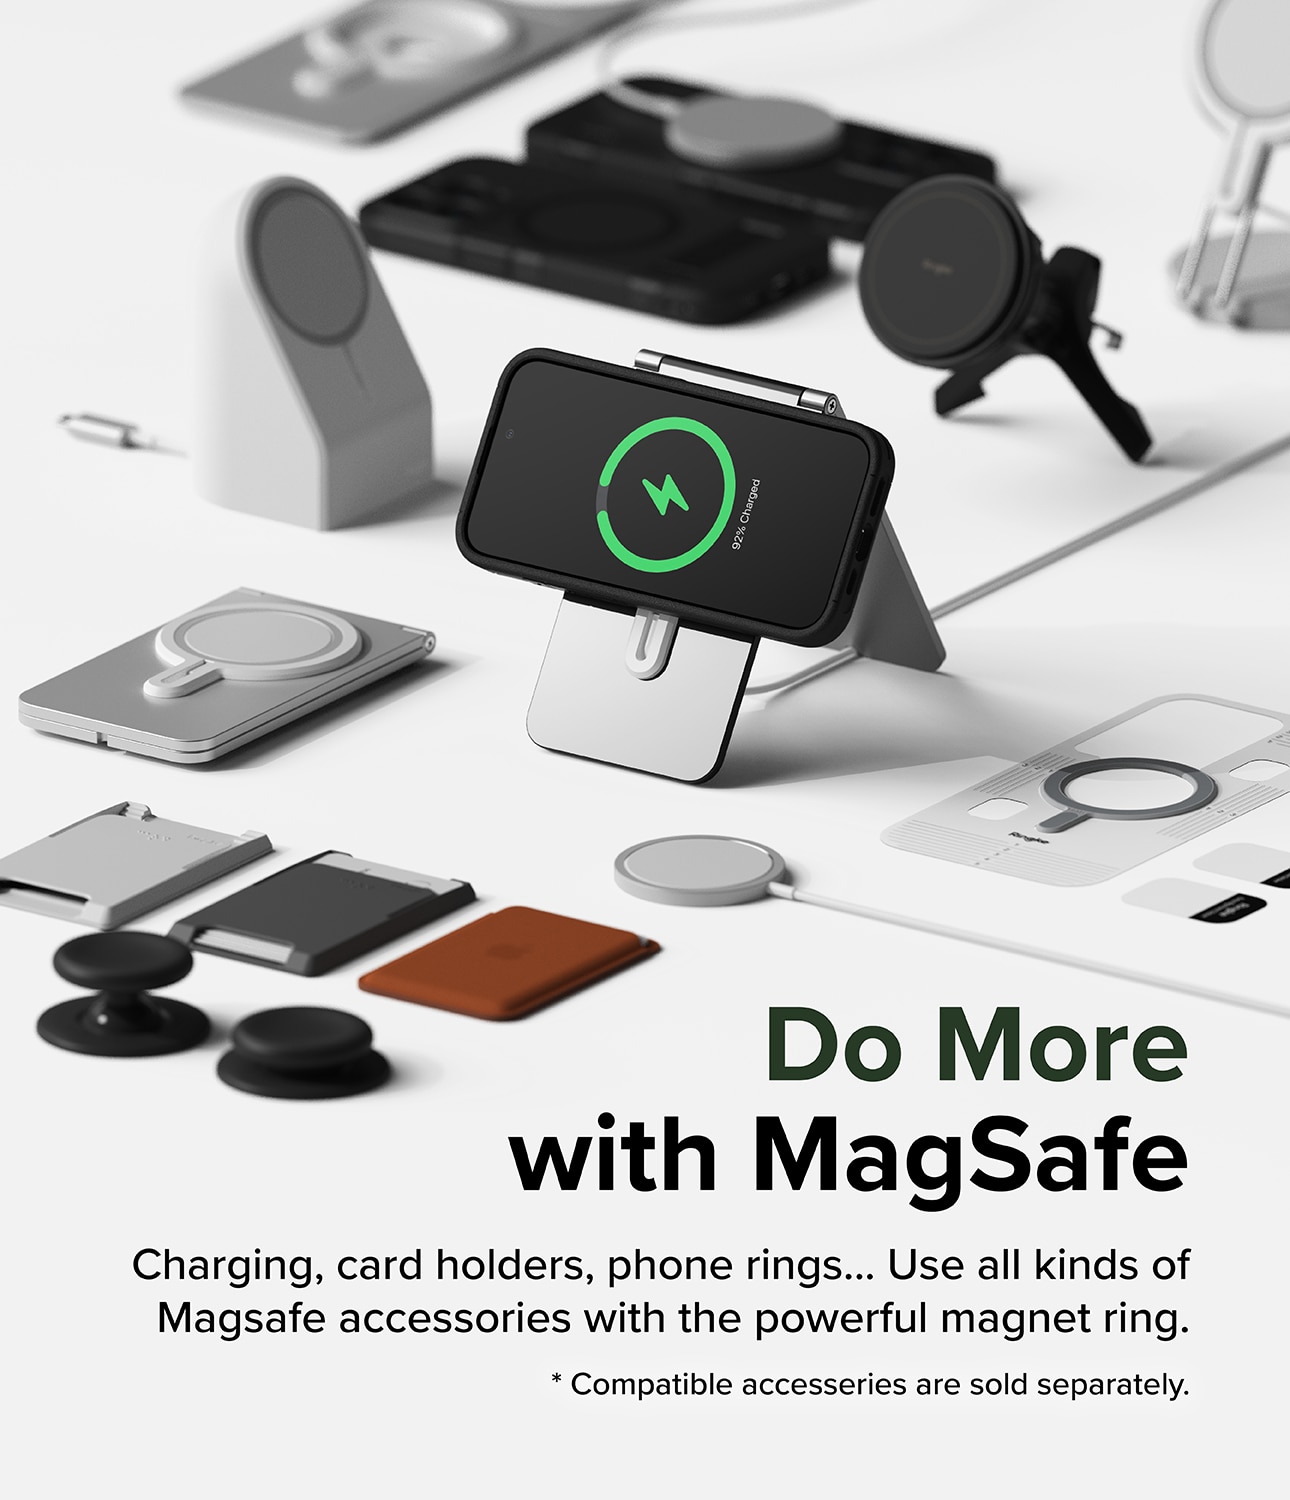 Alles Magnetic Coque iPhone 15 Pro Max, noir